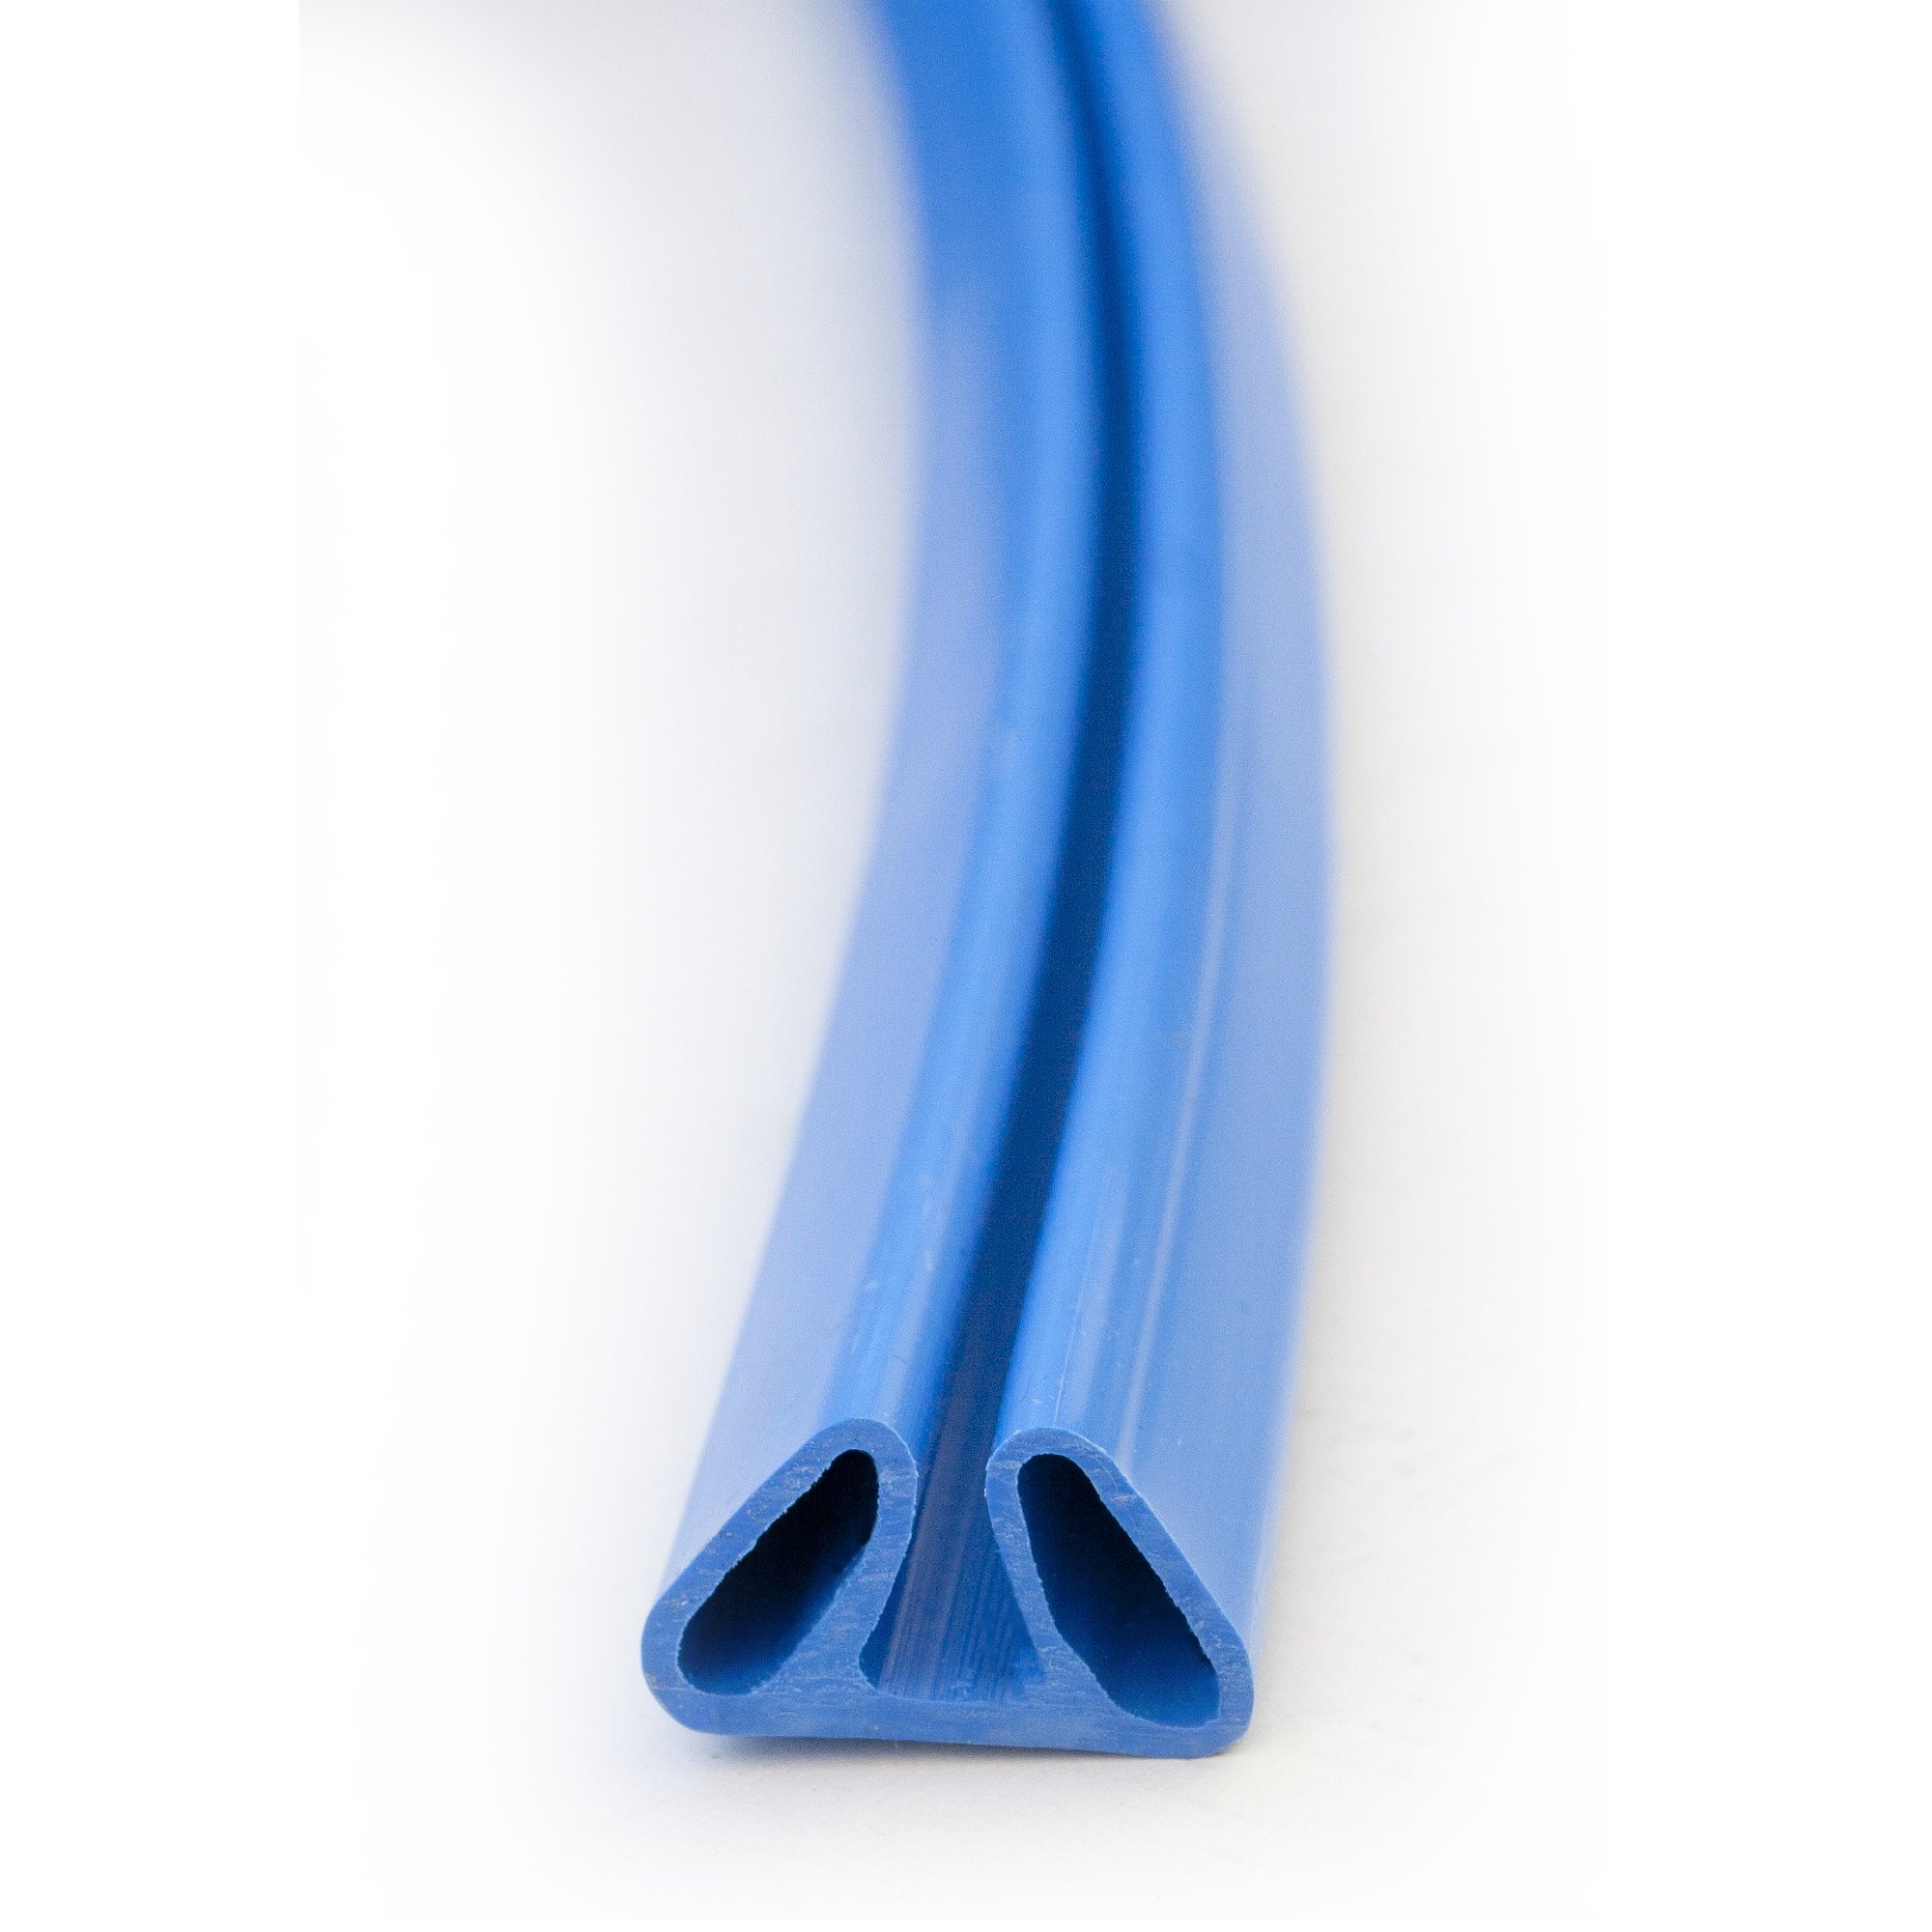 Stahlwandpool Set (6-teilig) hoch rund Malibu 350 x 120 cm, Stahl 0,4 mm weiß Folie 0,4 mm blau